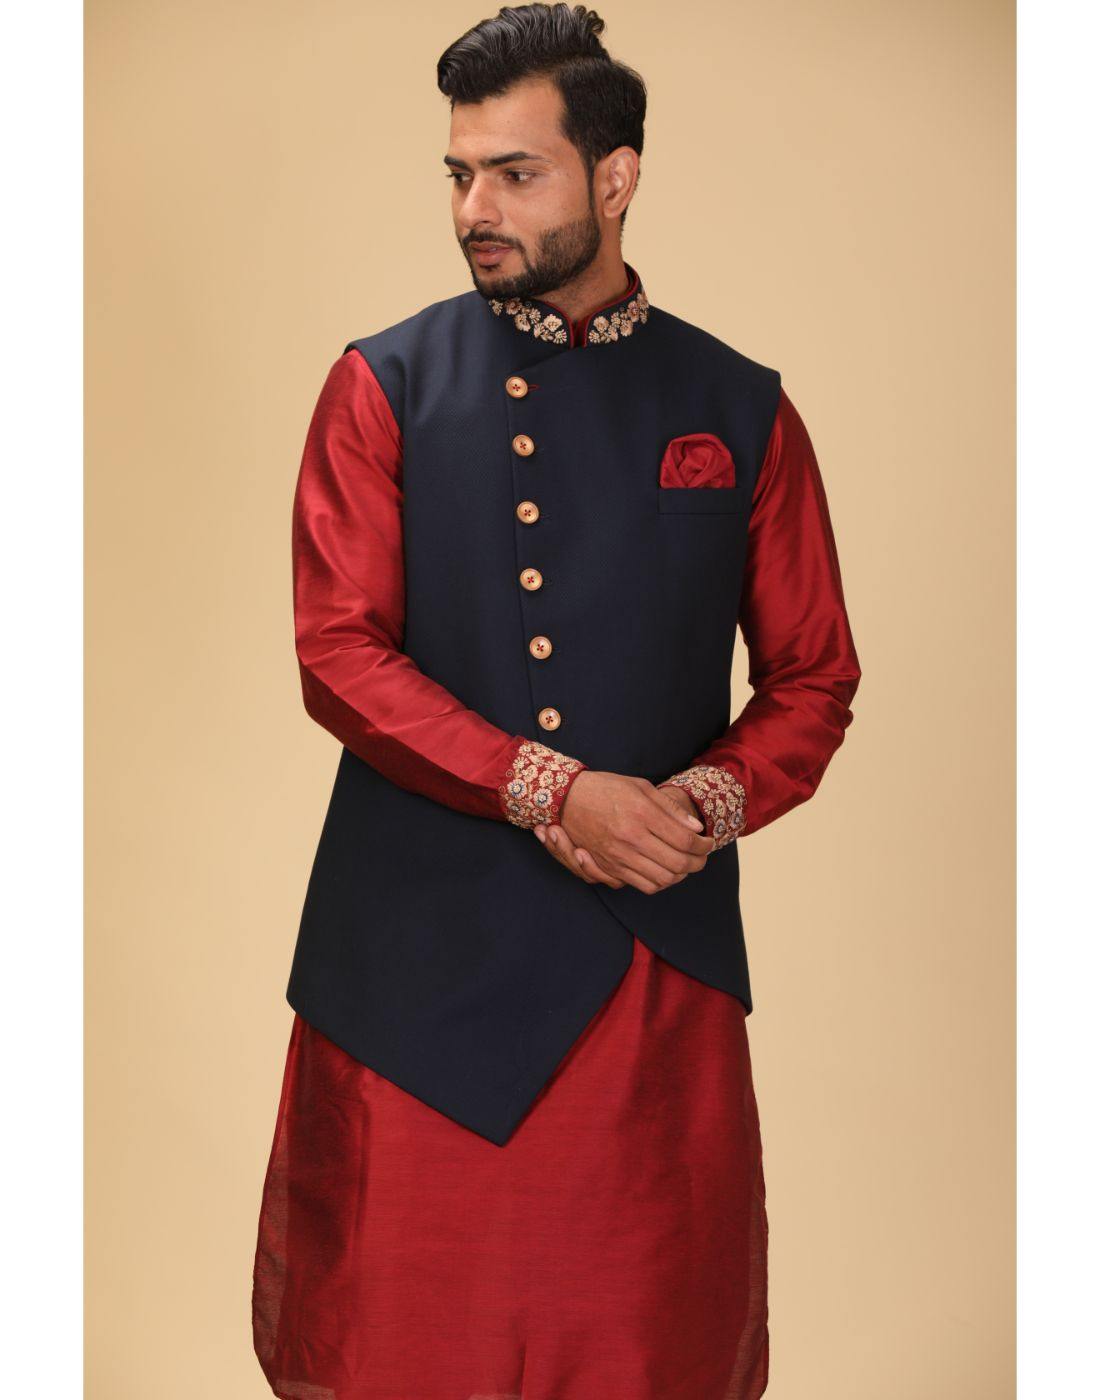 Velvet - Nehru Jackets - Indian Wear for Men - Buy Latest Designer Men wear  Clothing Online - Utsav Fashion